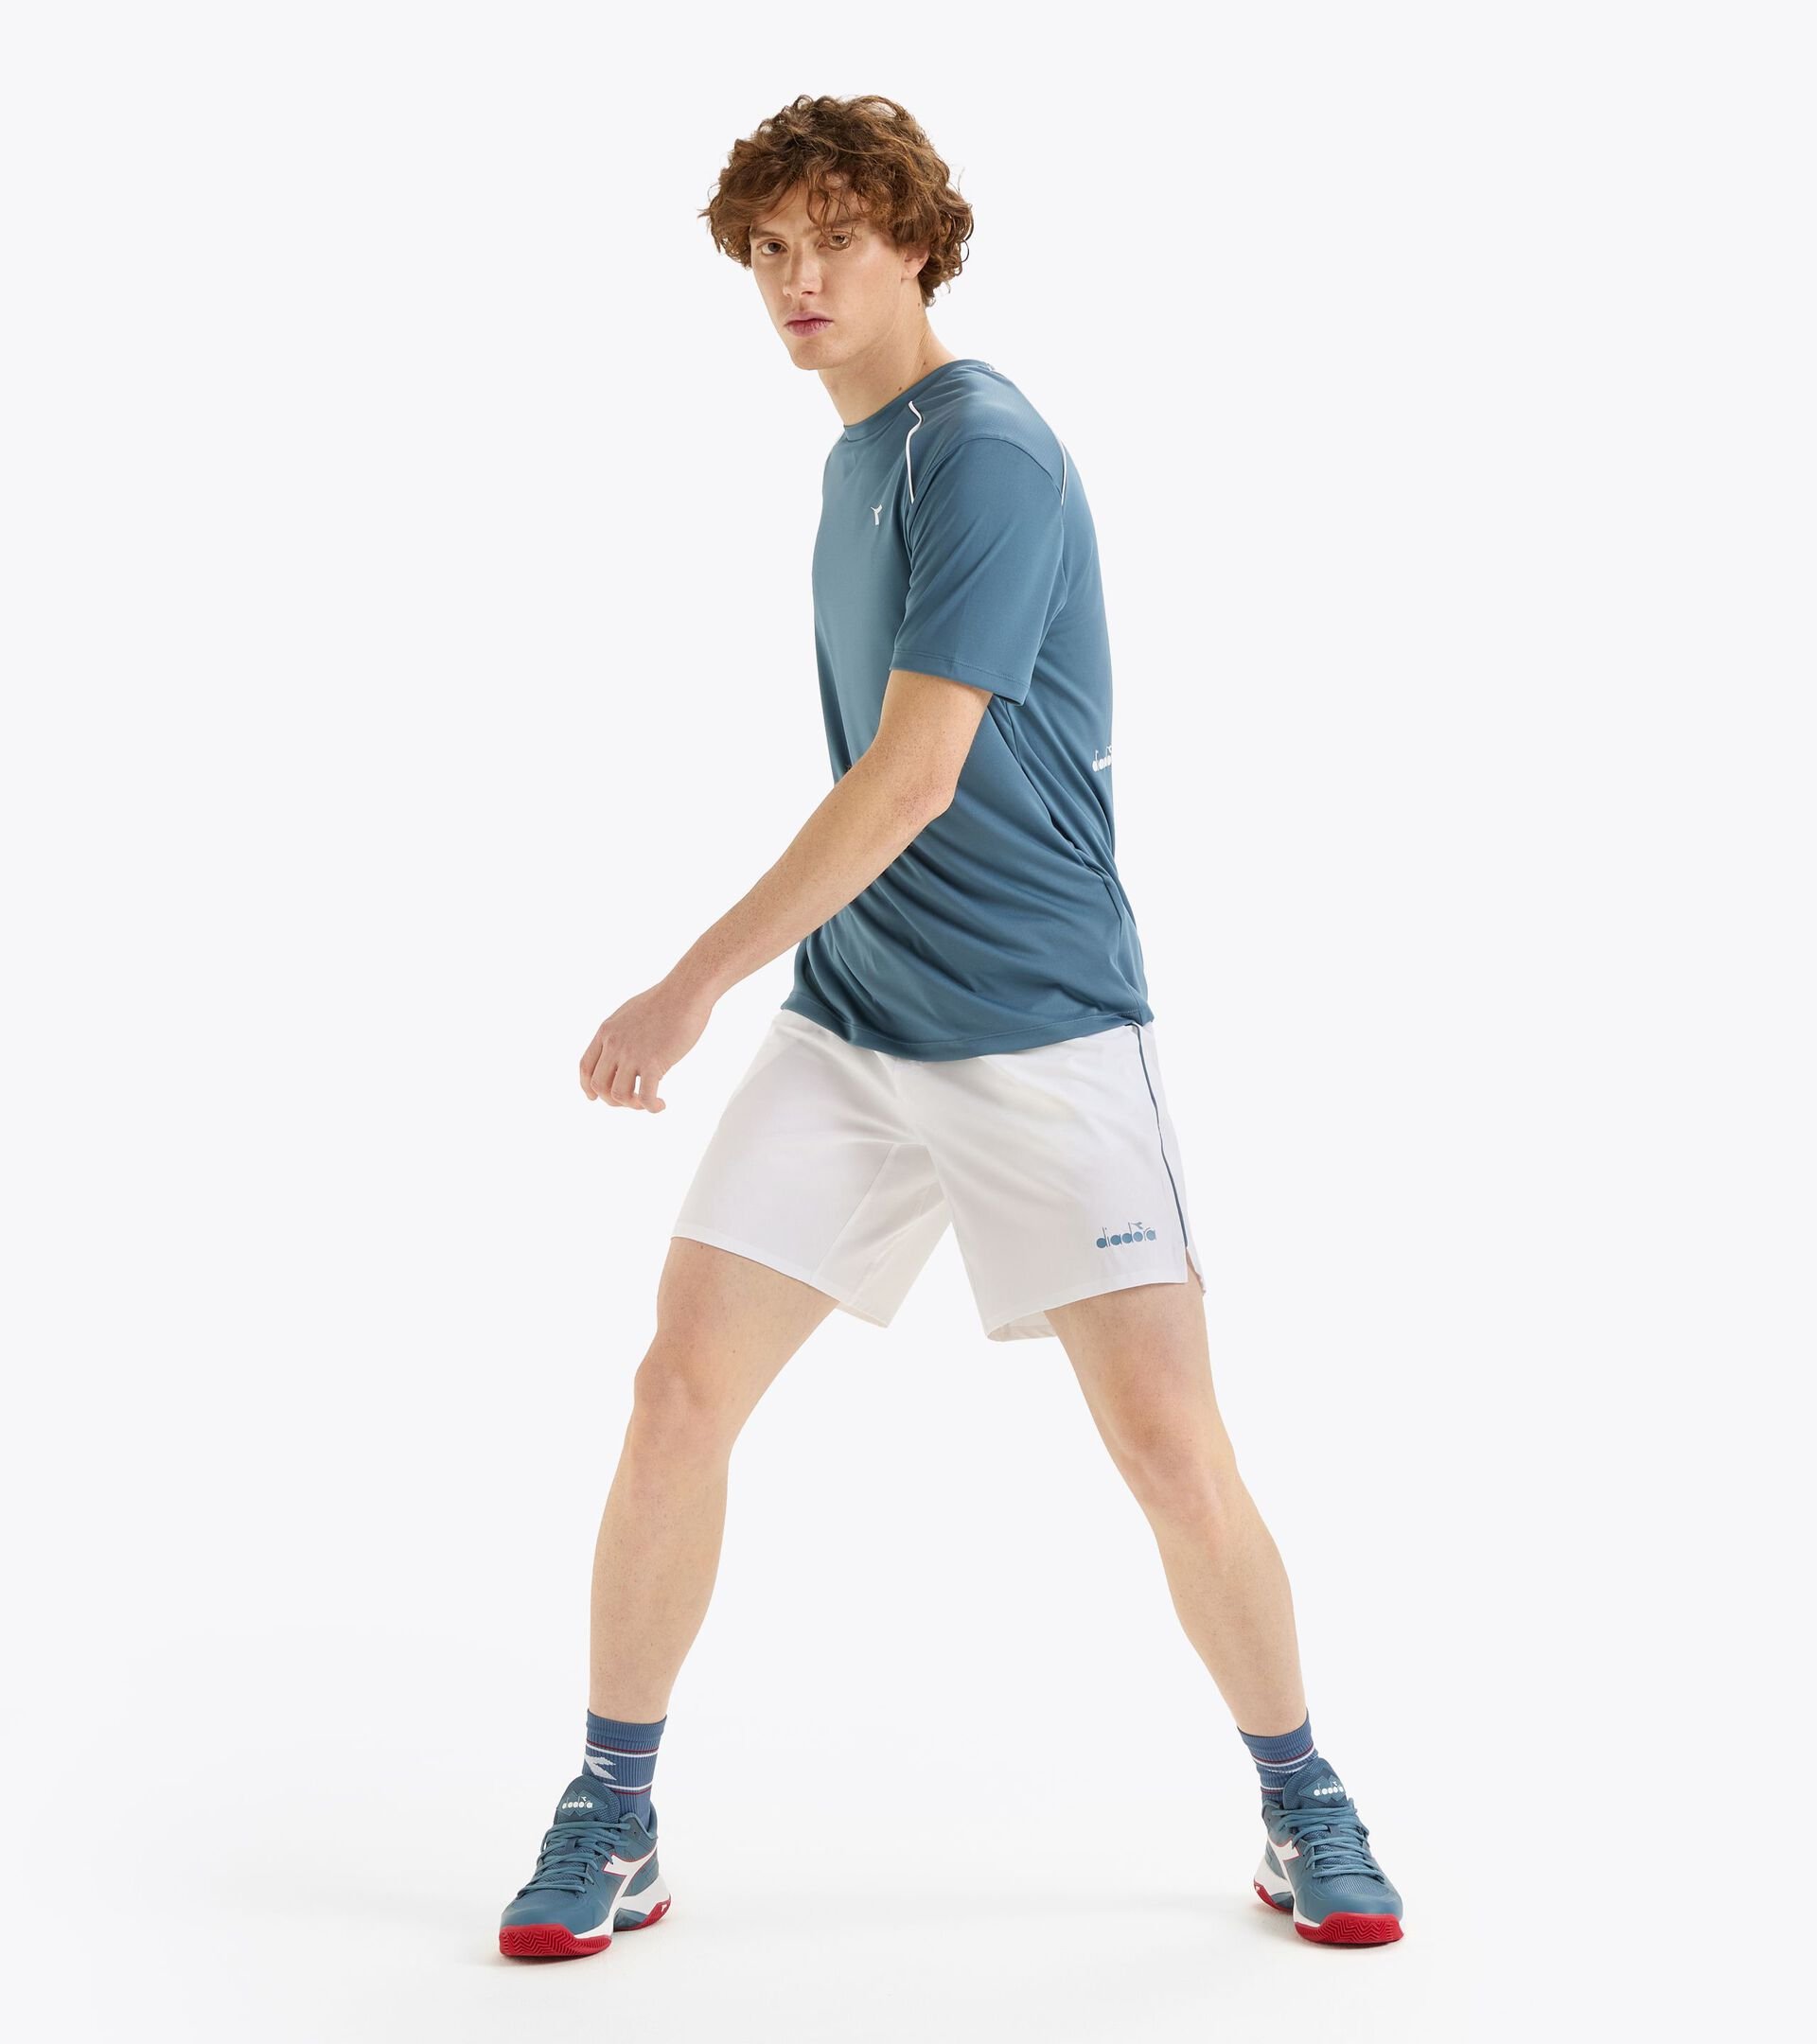 Tennis-Shorts 9’’ - Herren
 SHORTS CORE 9" STRAHLEND WEISSE - Diadora